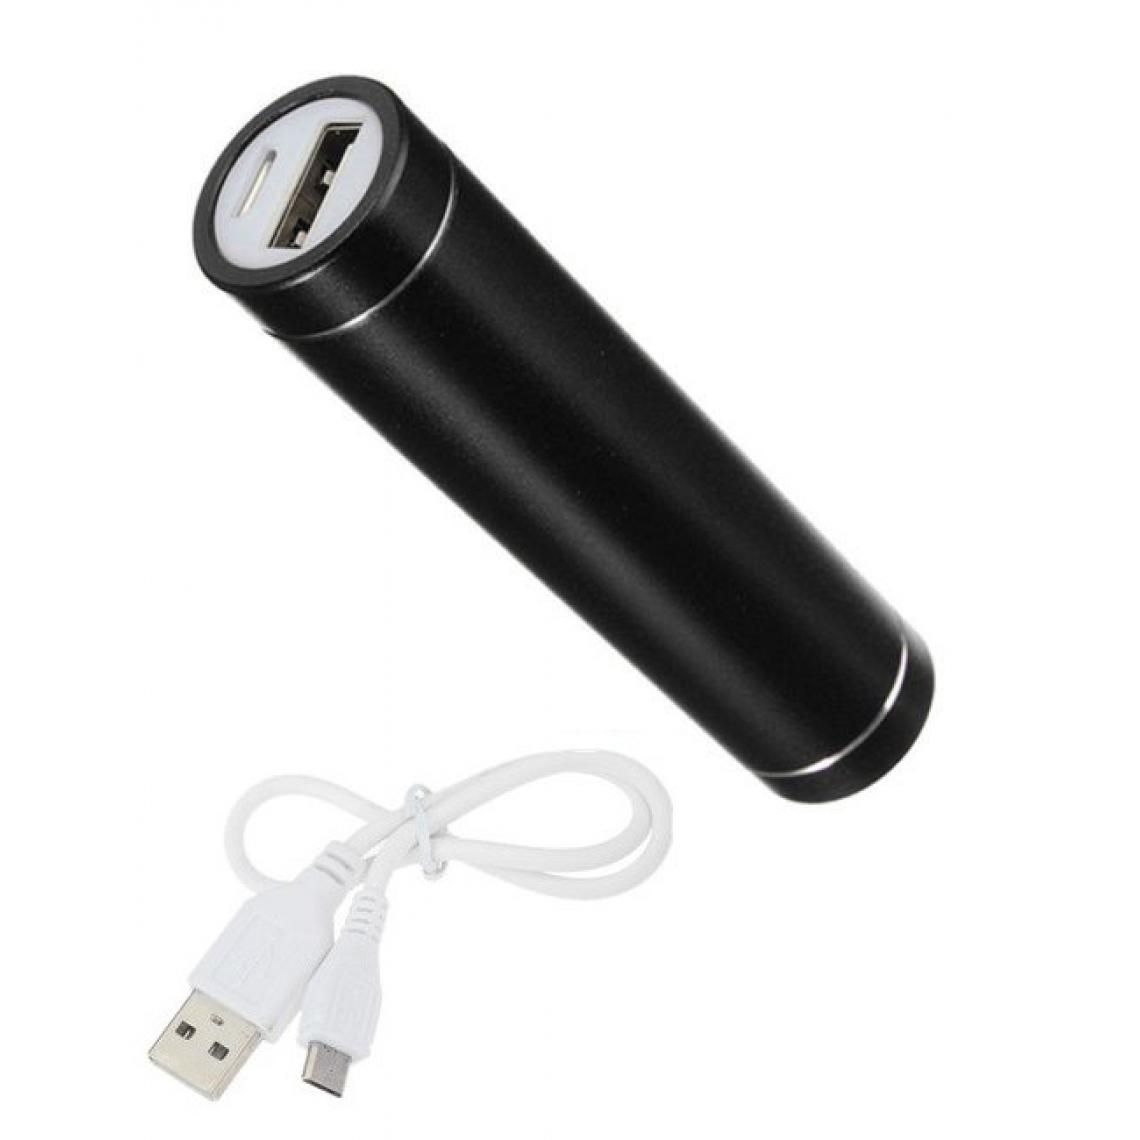 Shot - Batterie Chargeur Externe pour SAMSUNG Galaxy A10 Power Bank 2600mAh avec Cable USB/Mirco USB Secours Telephone (NOIR) - Chargeur secteur téléphone